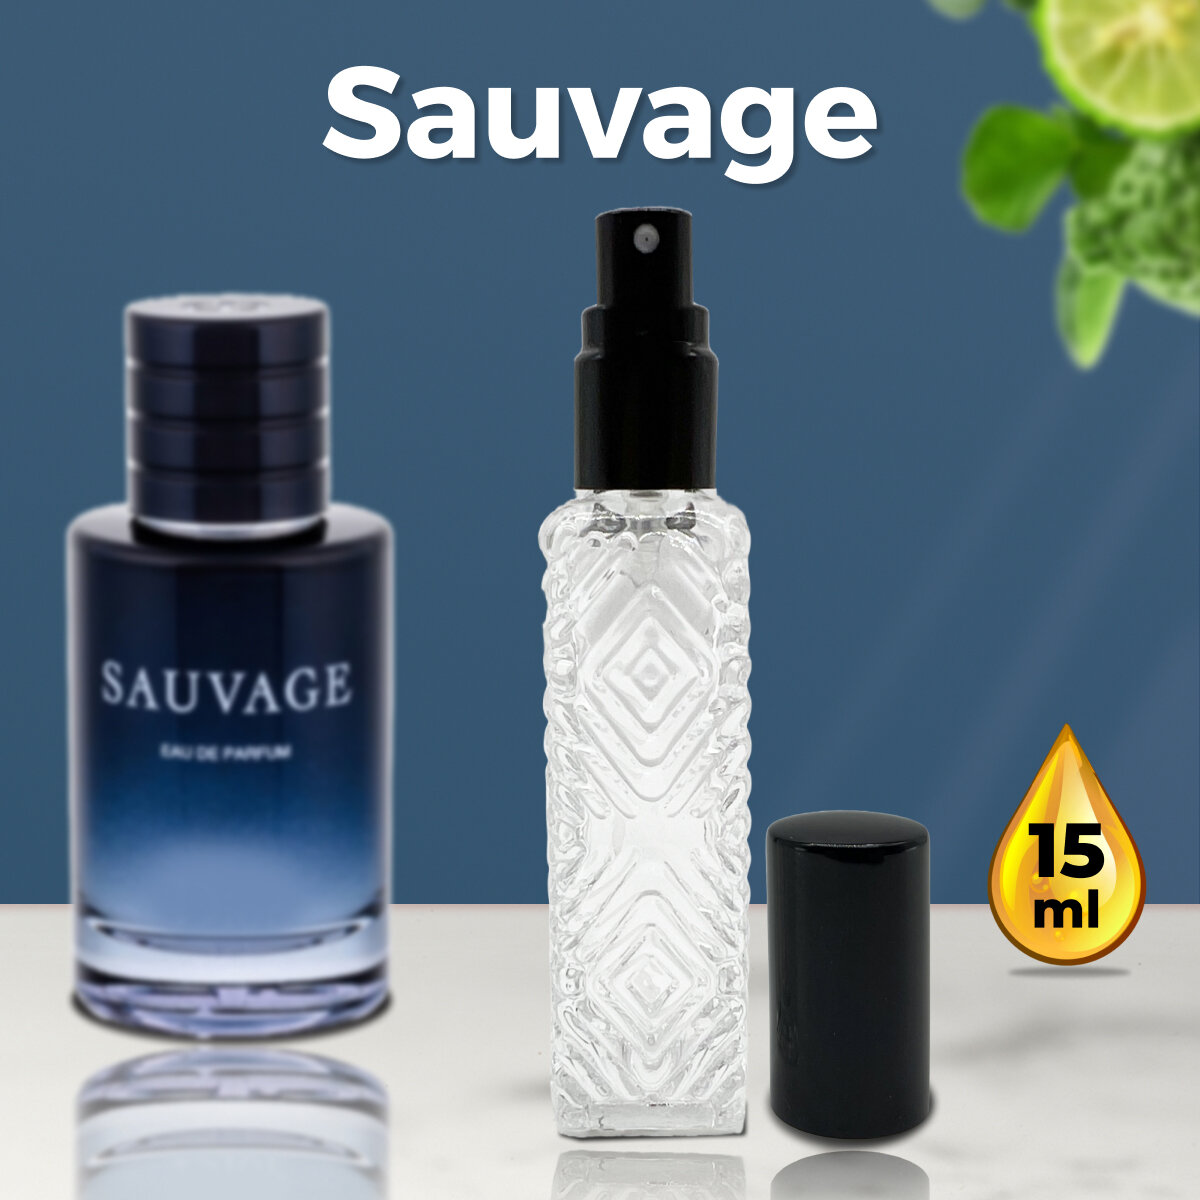 Gratus Parfum Savage духи мужские масляные 15 мл (спрей) + подарок